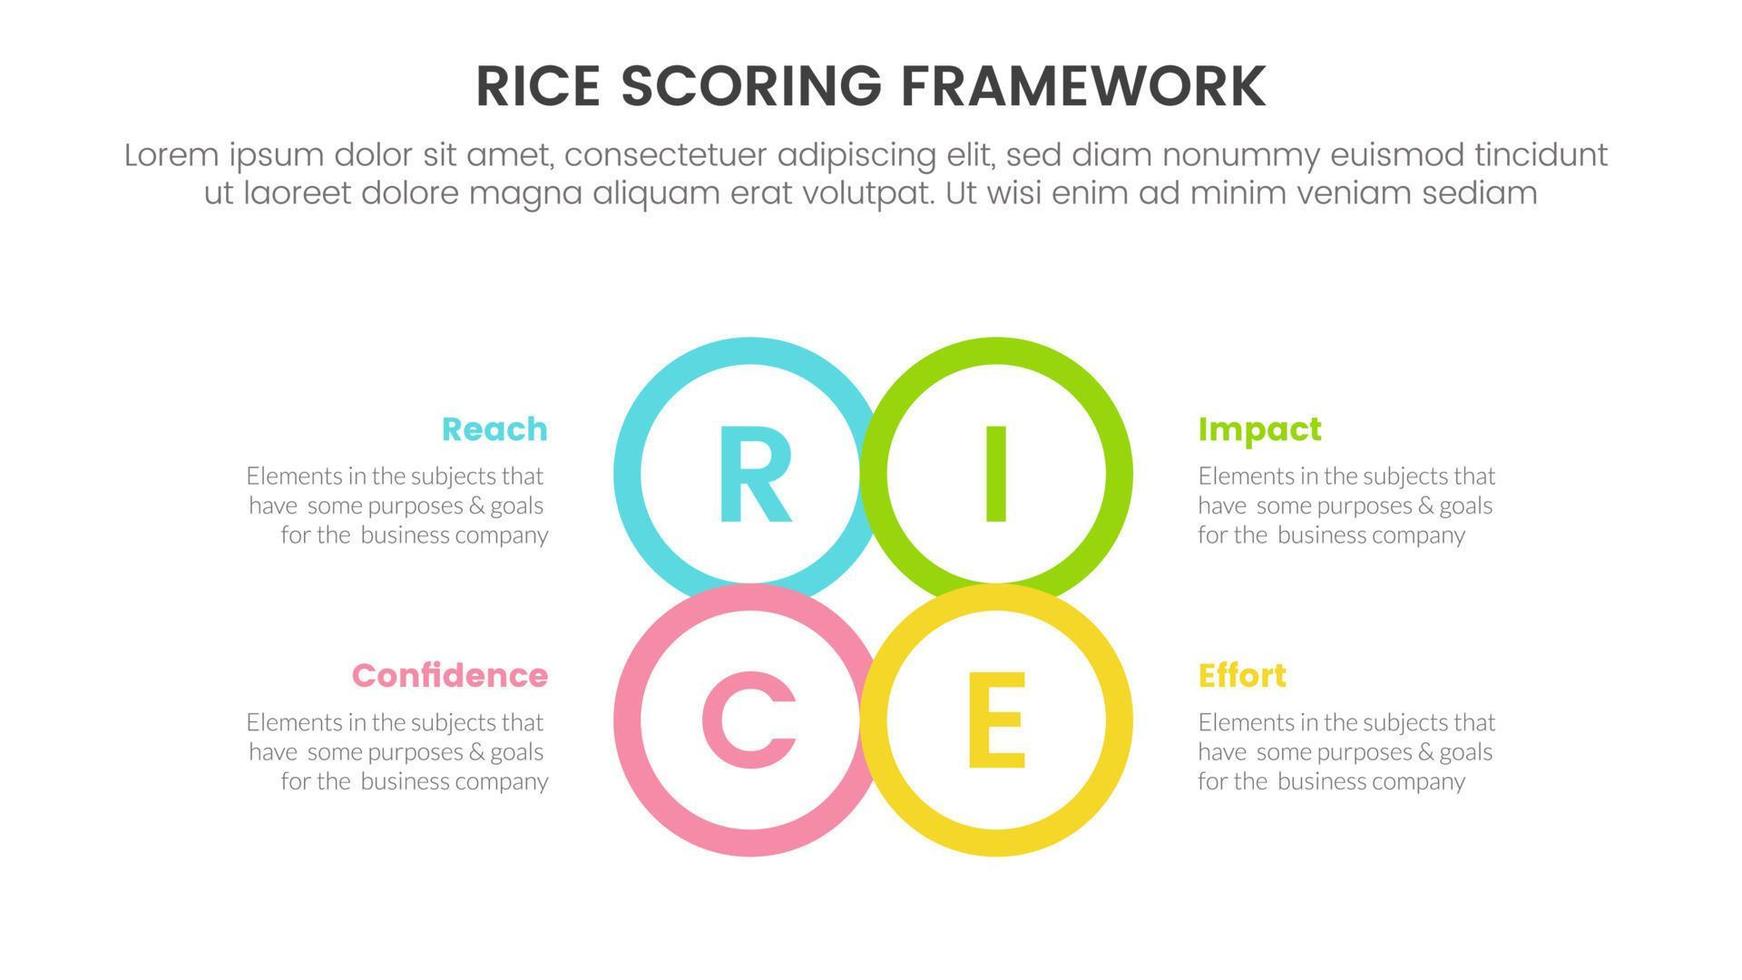 Reis Wertung Modell- Rahmen Priorisierung Infografik mit Kreis Center gestalten Gliederung Information Konzept zum rutschen Präsentation vektor